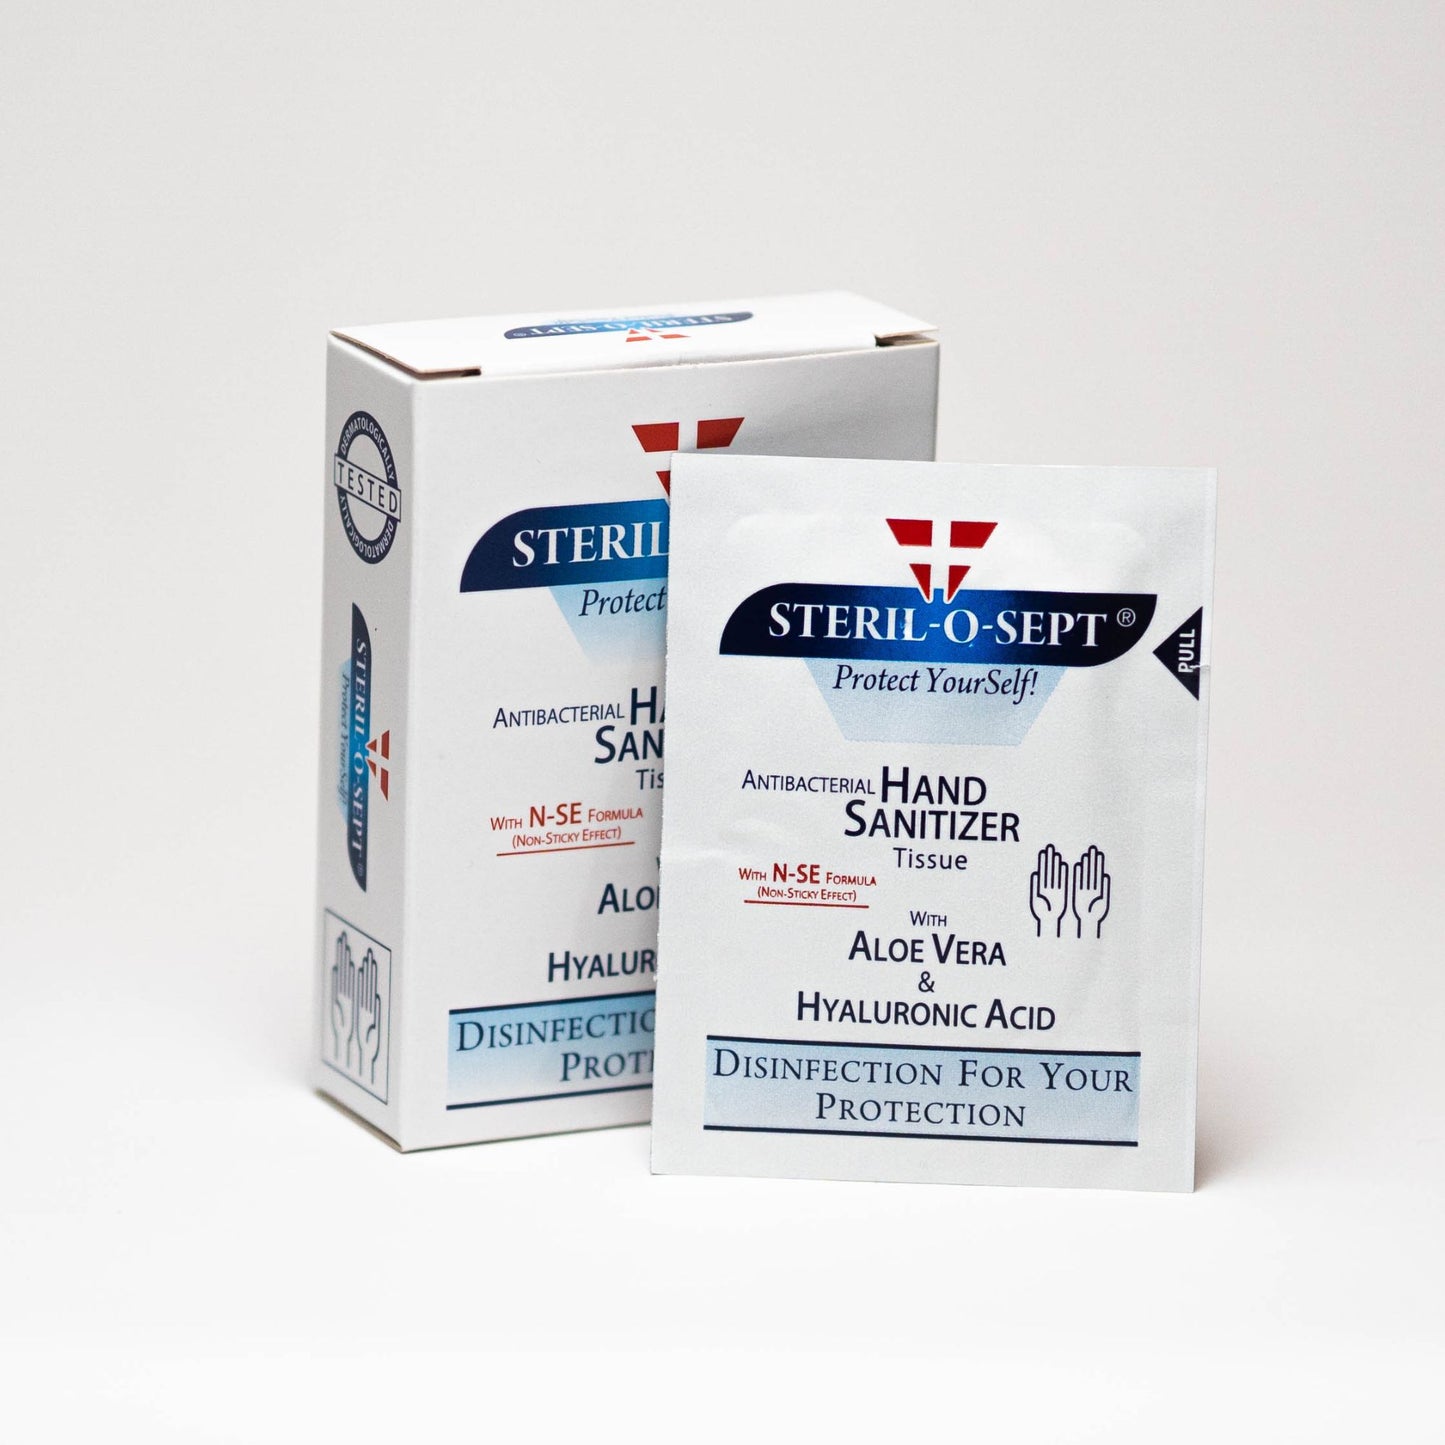 STERIL-O-SEPT Premium Hand Sanitizer - Tissues